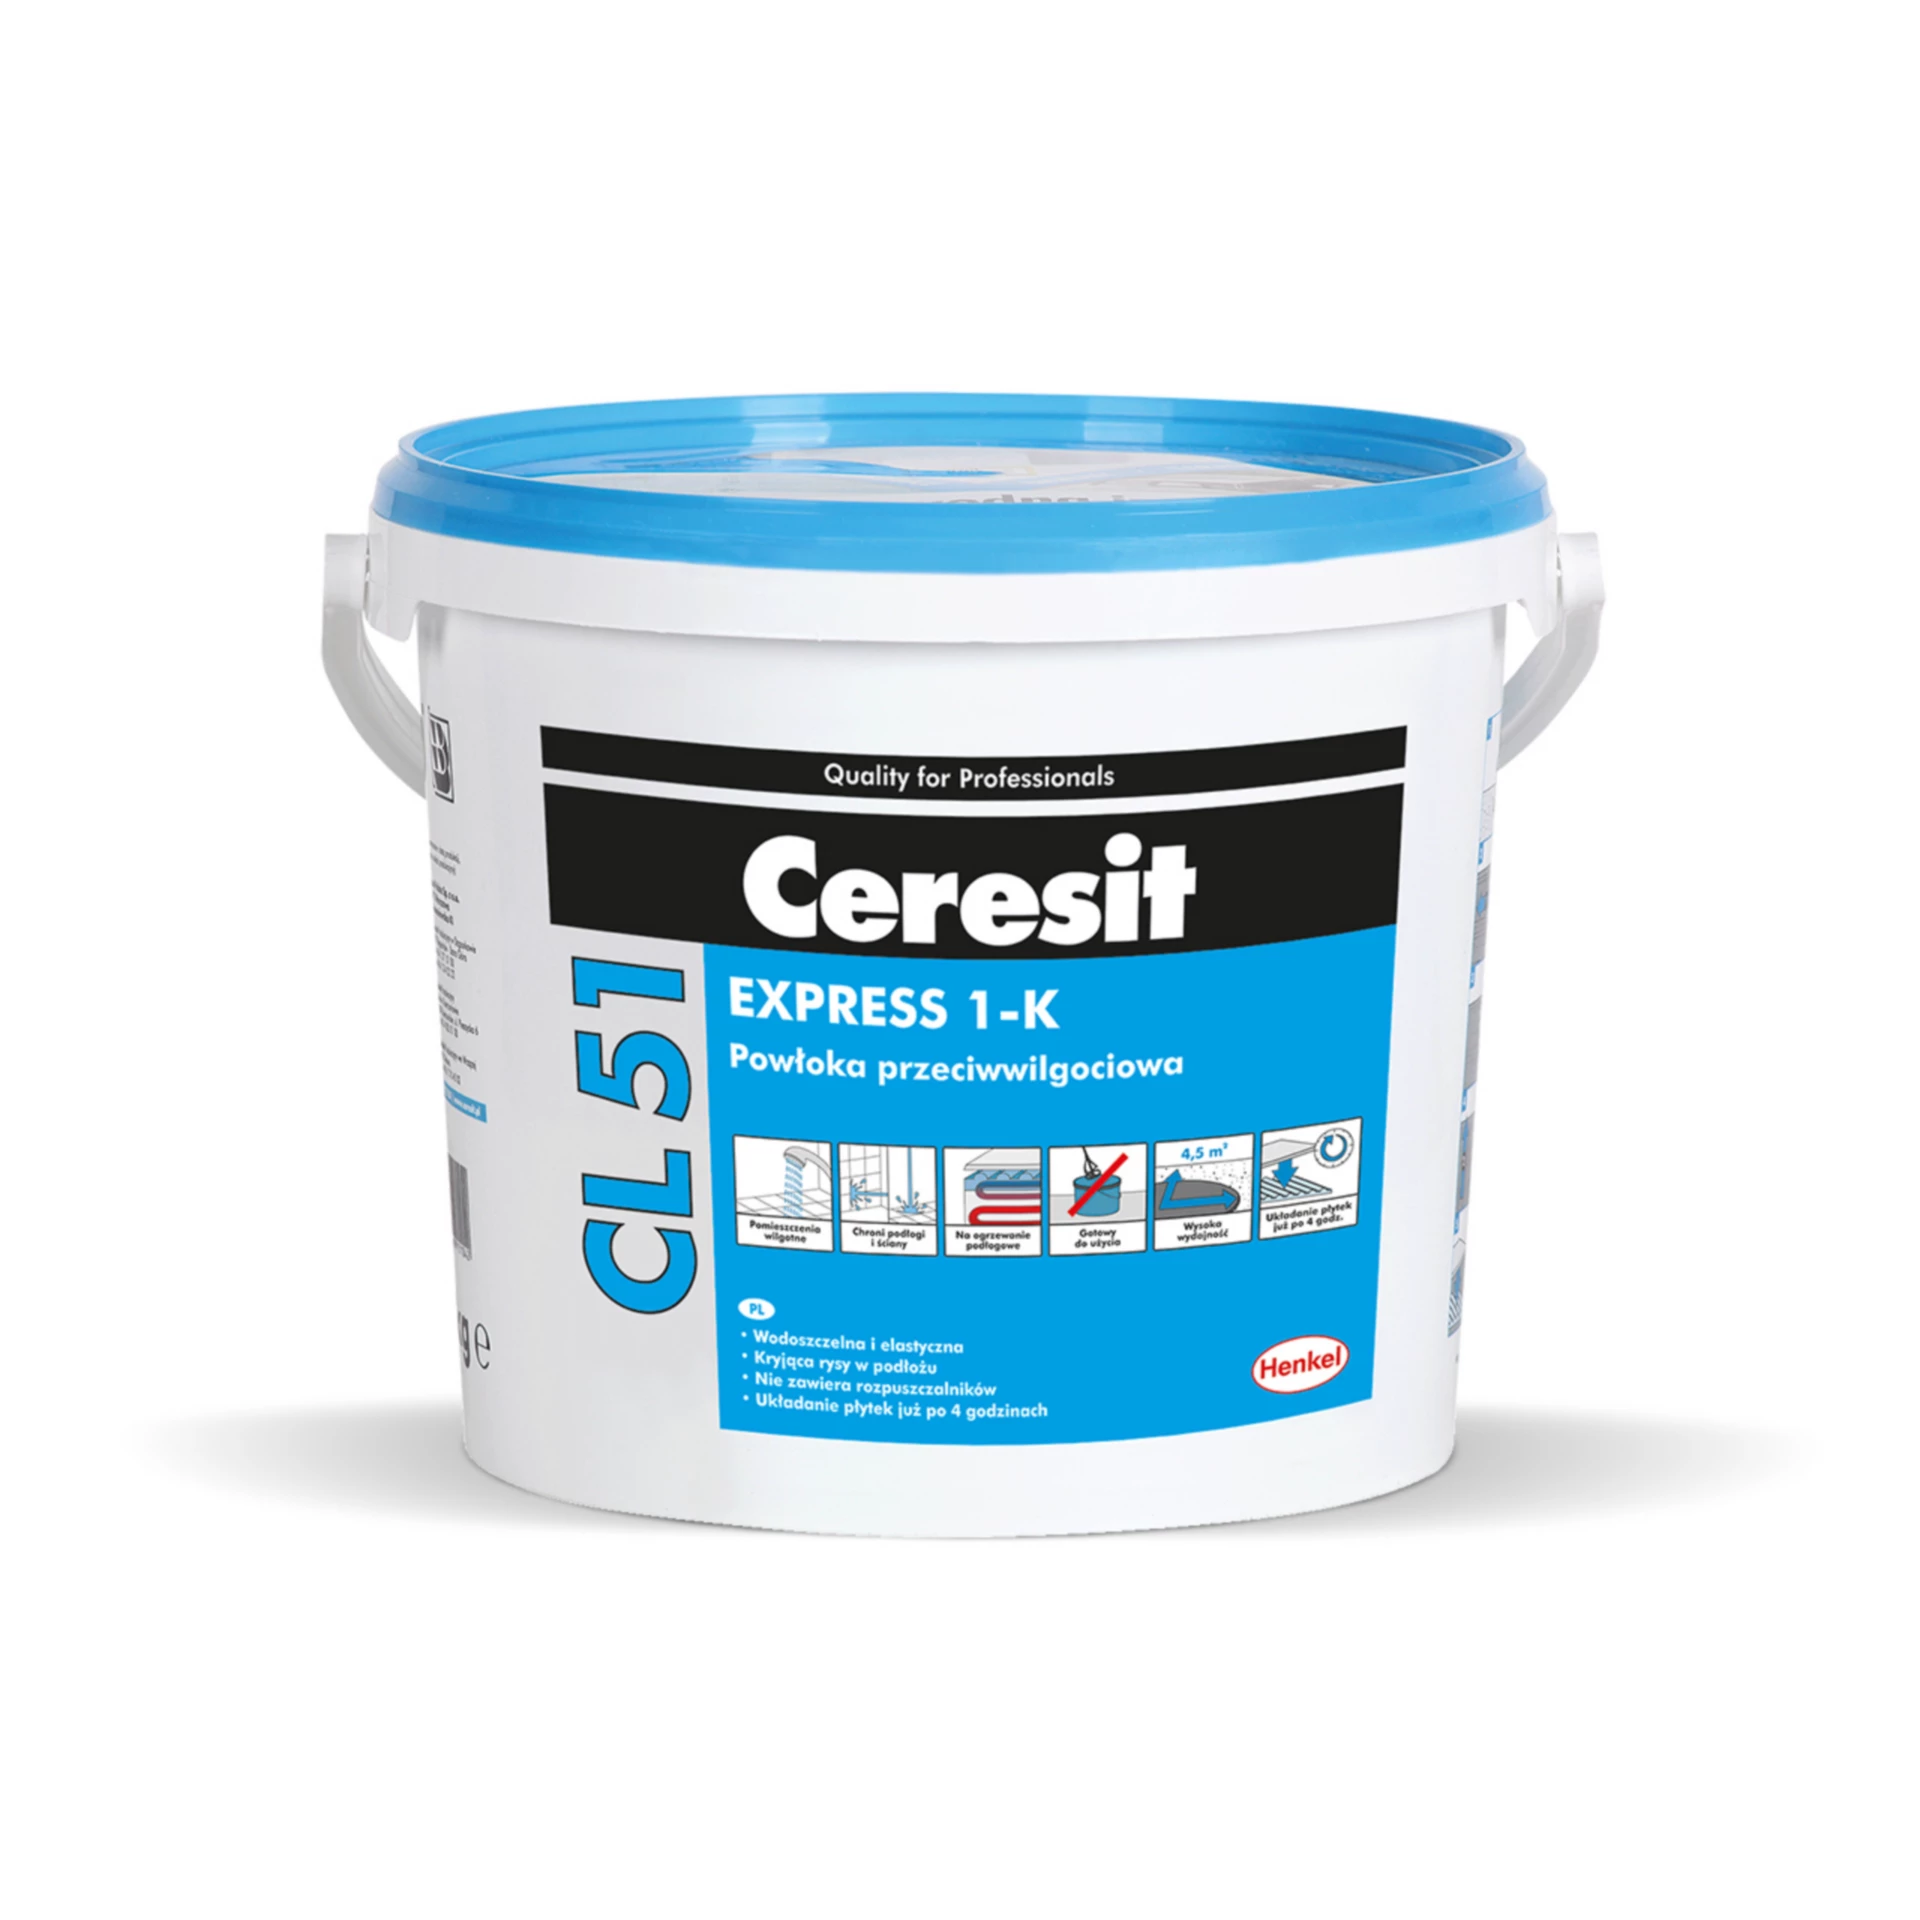 Ceresit Cl51 Στεγανοποίηση ενός συστατικού κάτω από πλακίδια 5kg